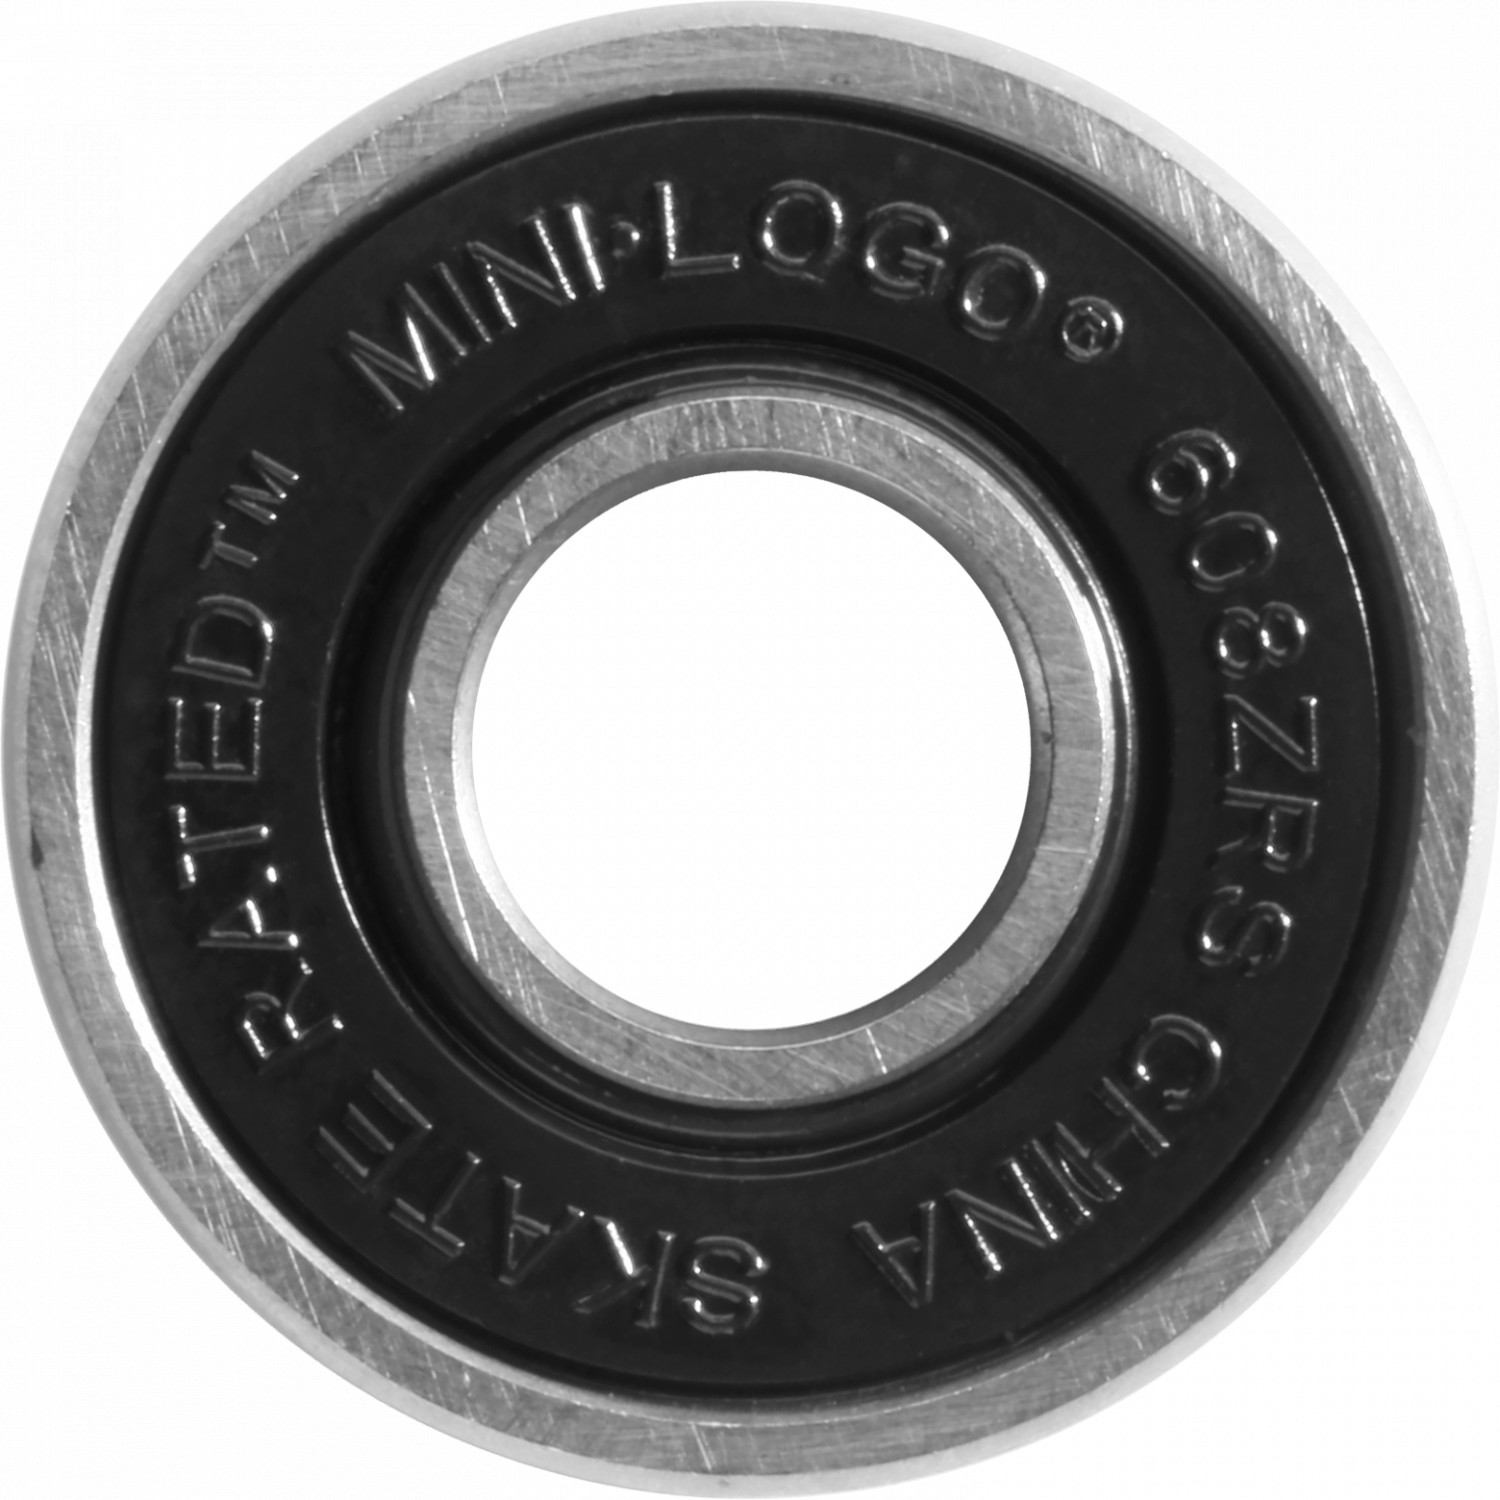 Roulements Mini Logo - Jeu de 8 roulements